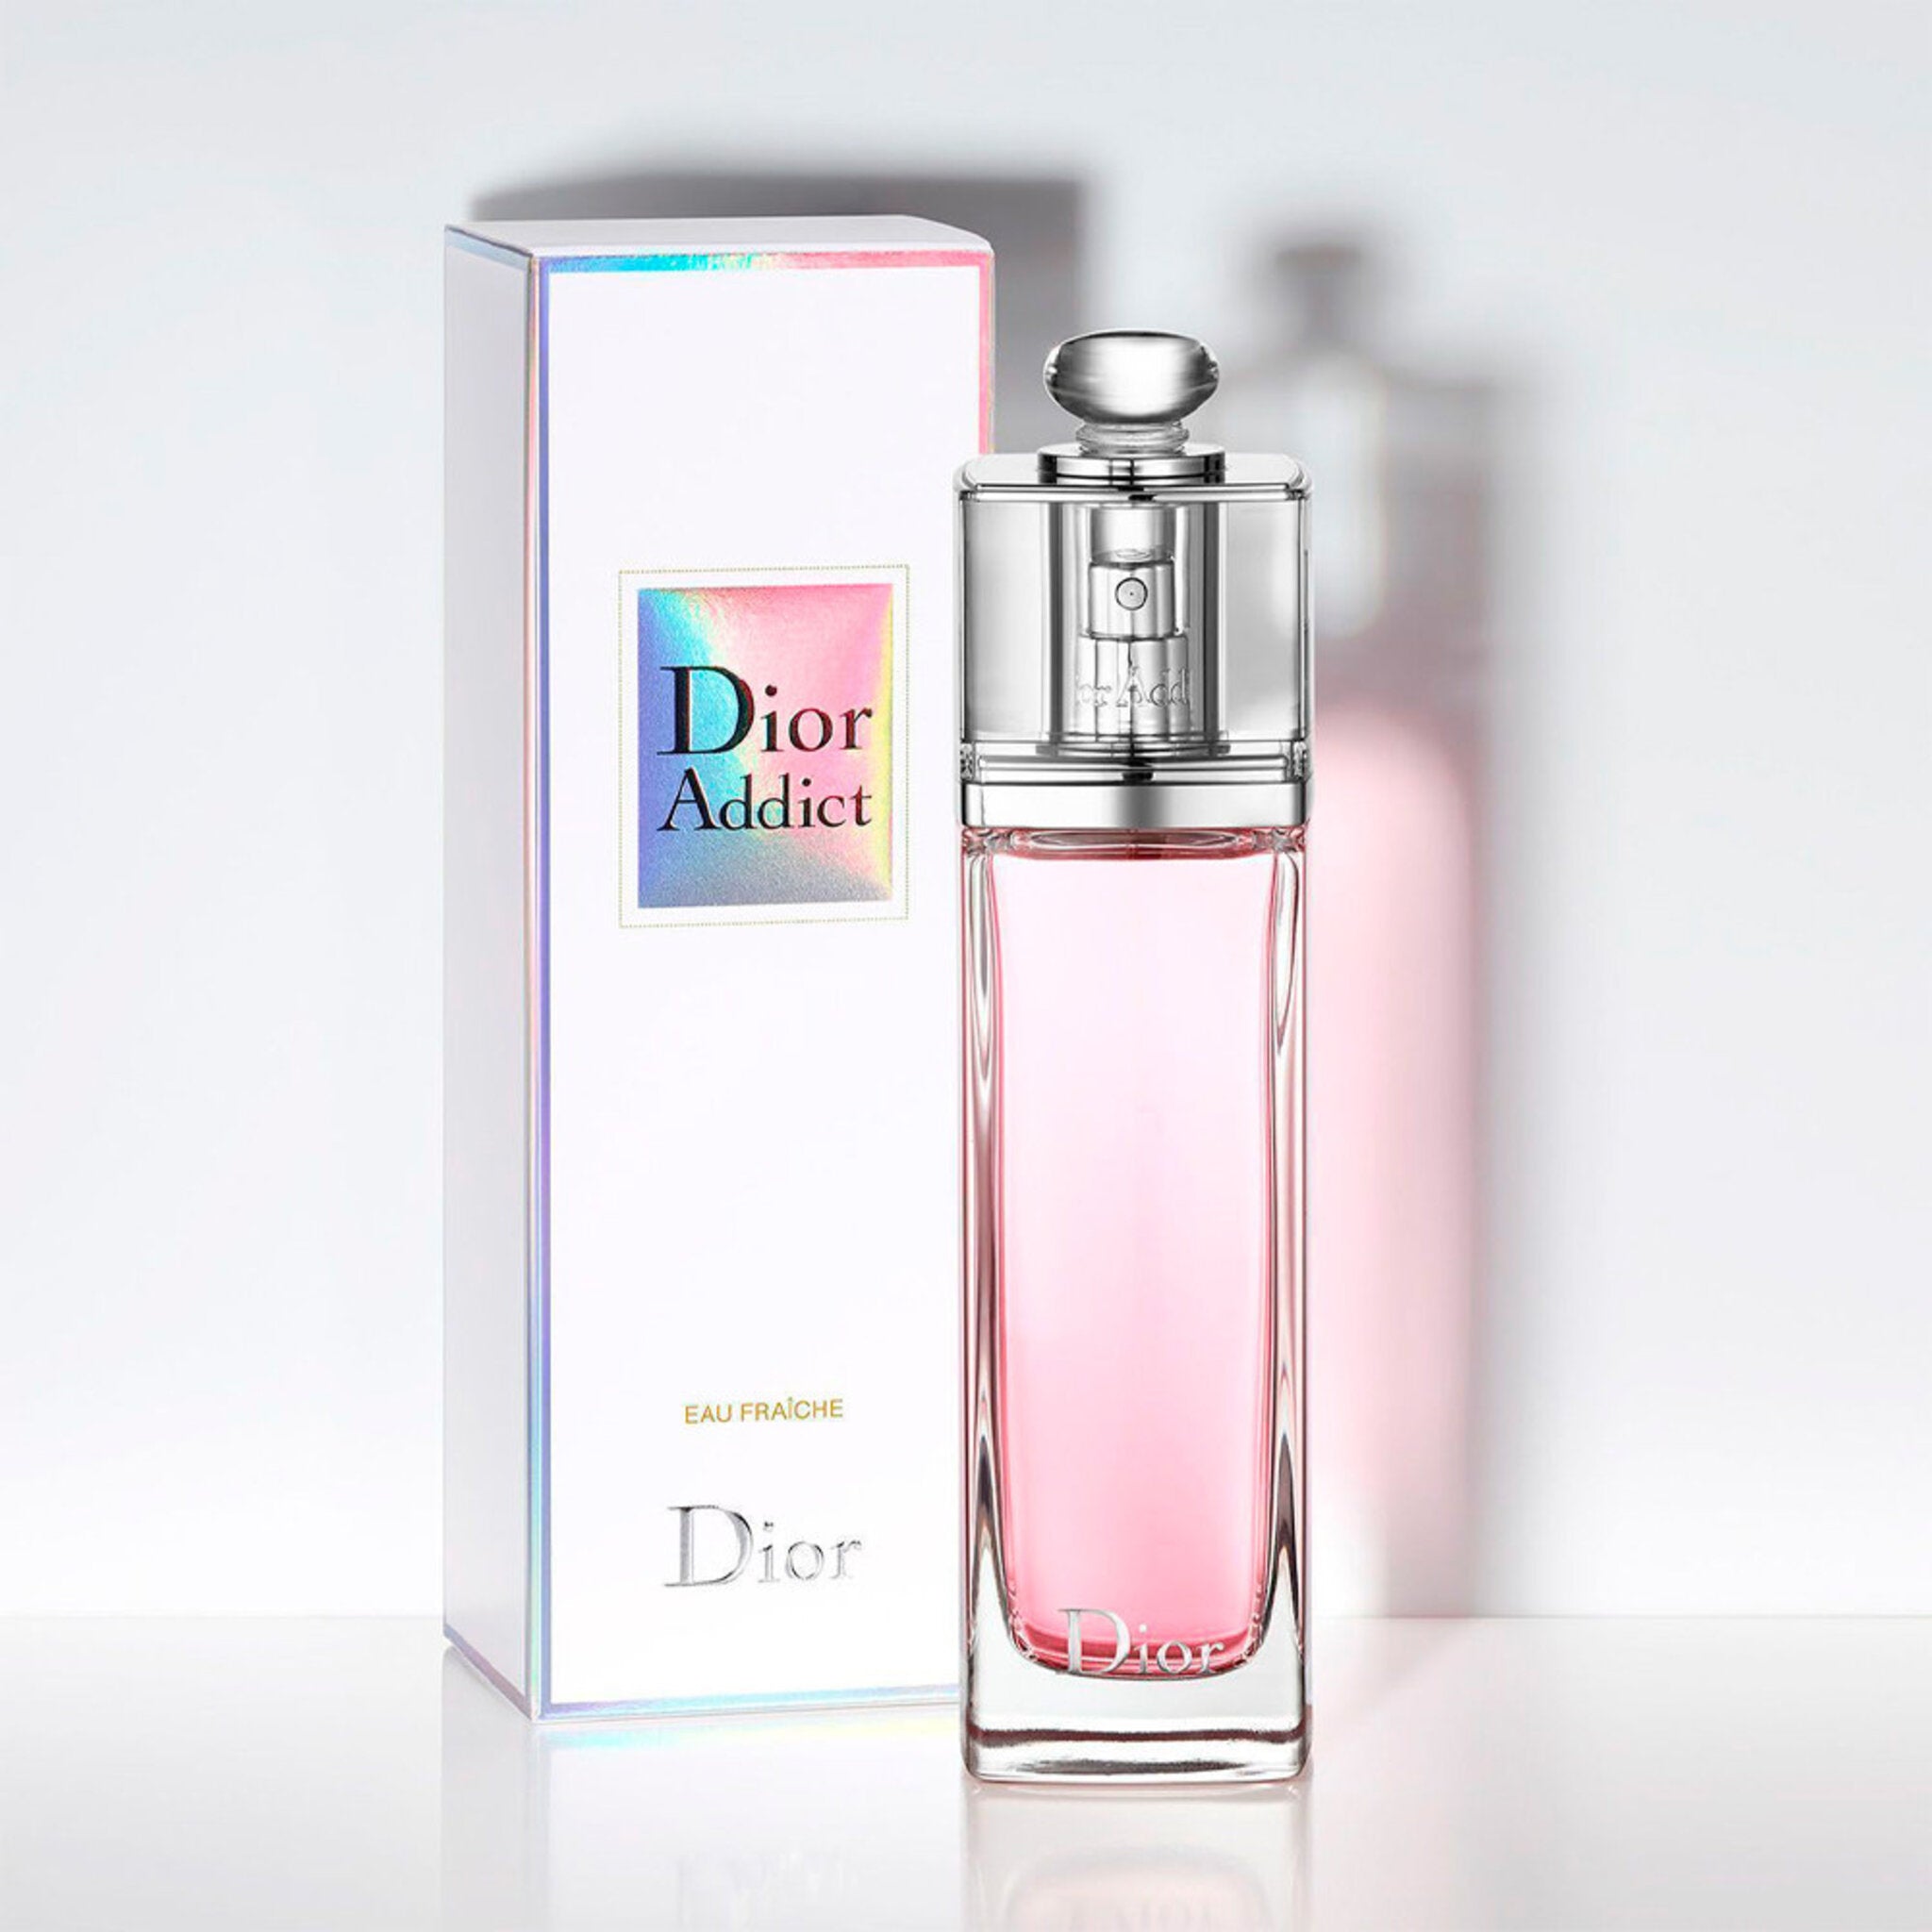 Dior addict цены. Christian Dior Addict Eau Fraiche. Туалетная вода Christian Dior Addict Eau Fraiche (2014). Dior Addict 2 Eau Fraiche. Christian Dior "Dior Addict" 100 ml.